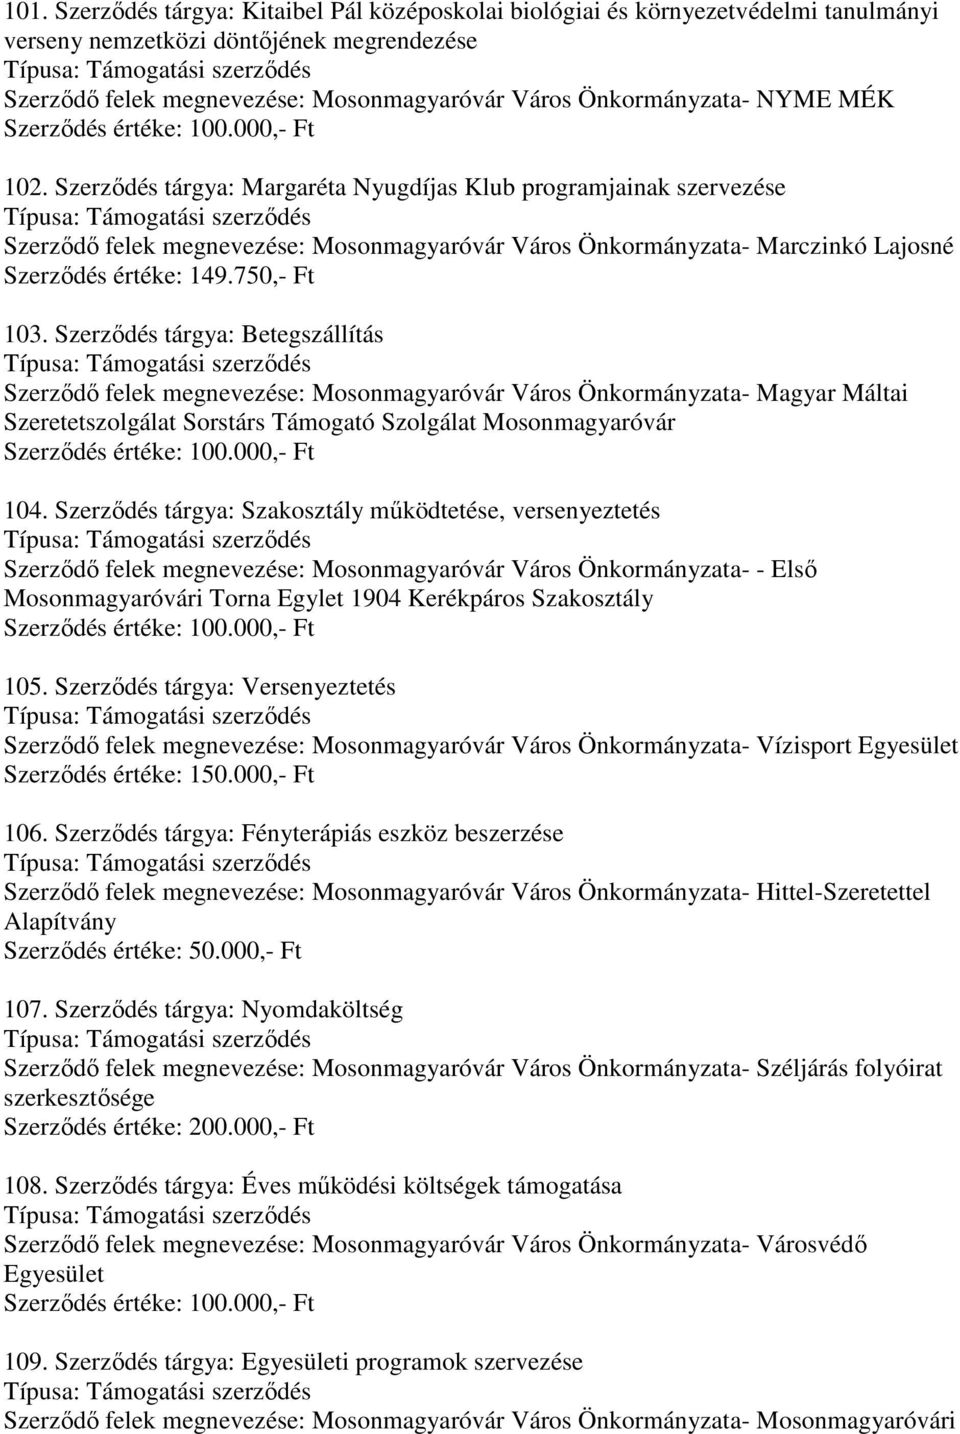 Szerződés tárgya: Betegszállítás Szerződő felek megnevezése: Mosonmagyaróvár Város Önkormányzata- Magyar Máltai Szeretetszolgálat Sorstárs Támogató Szolgálat Mosonmagyaróvár 104.